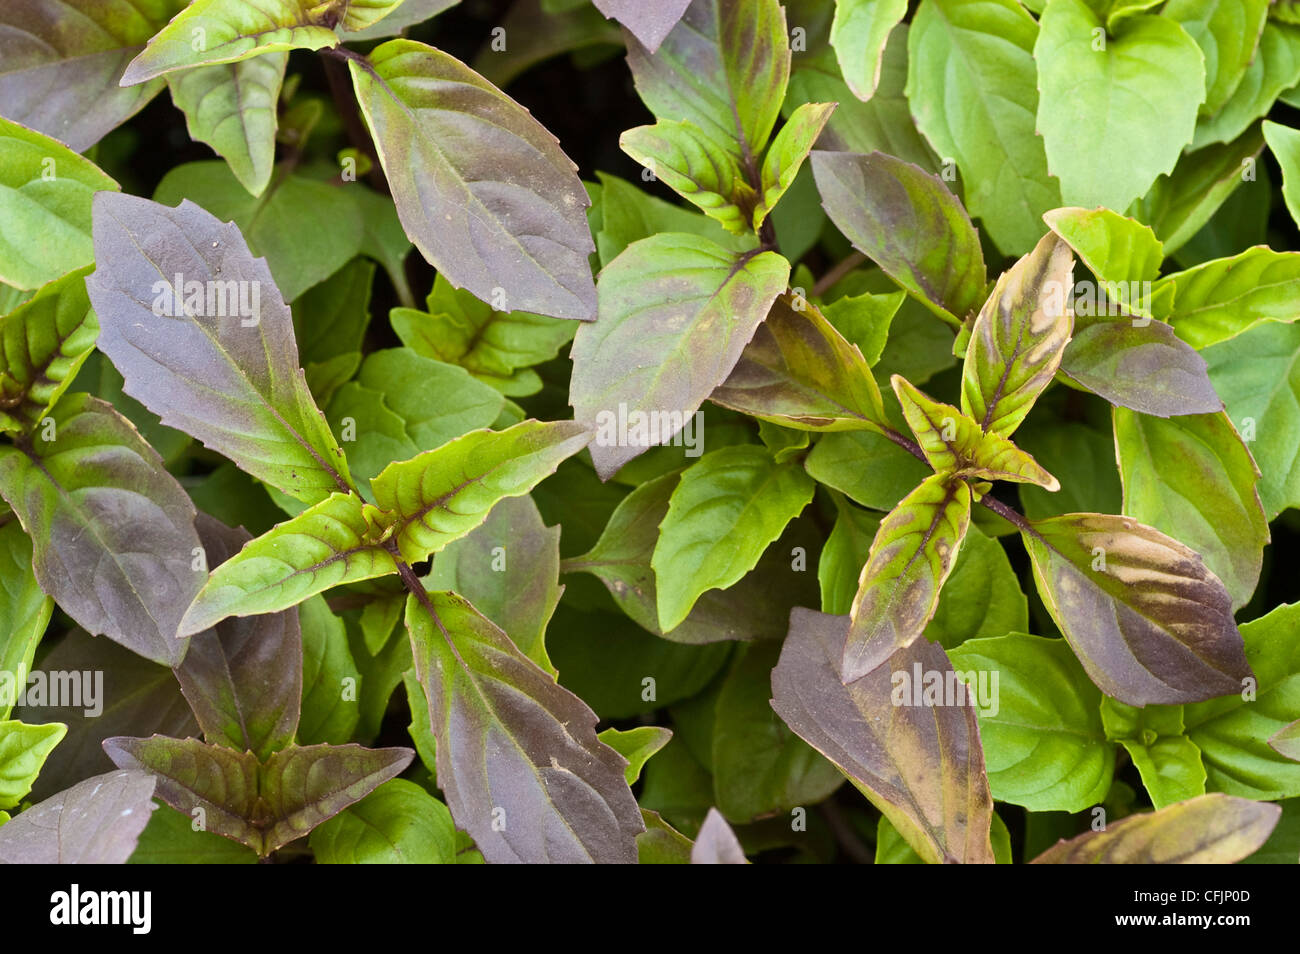 Foliage of Thai Basil, Ocimum basilicum, Lamiaceae Stock Photo